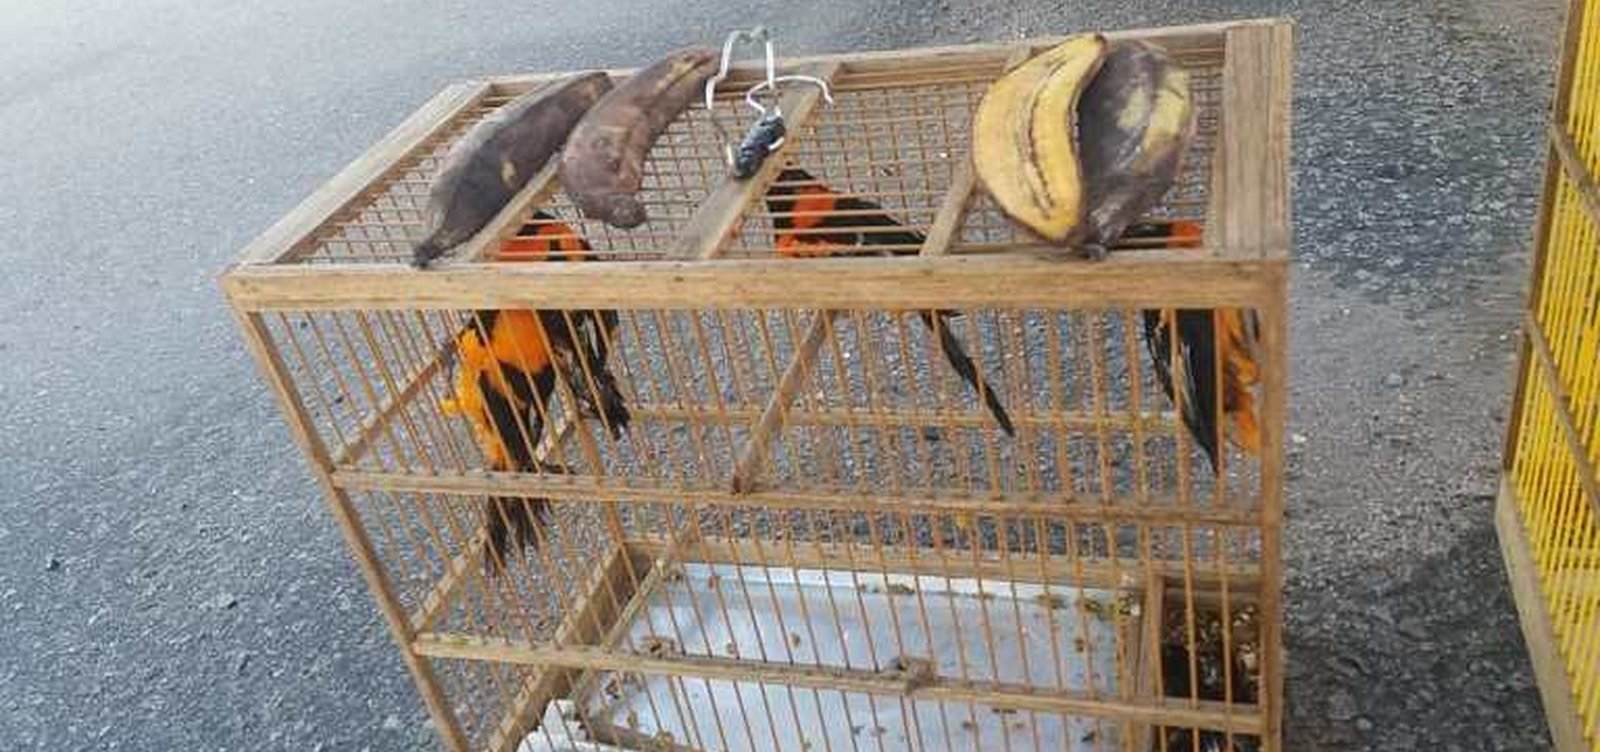 Homem é flagrado transportando aves silvestres em caminhão no sudoeste da Bahia